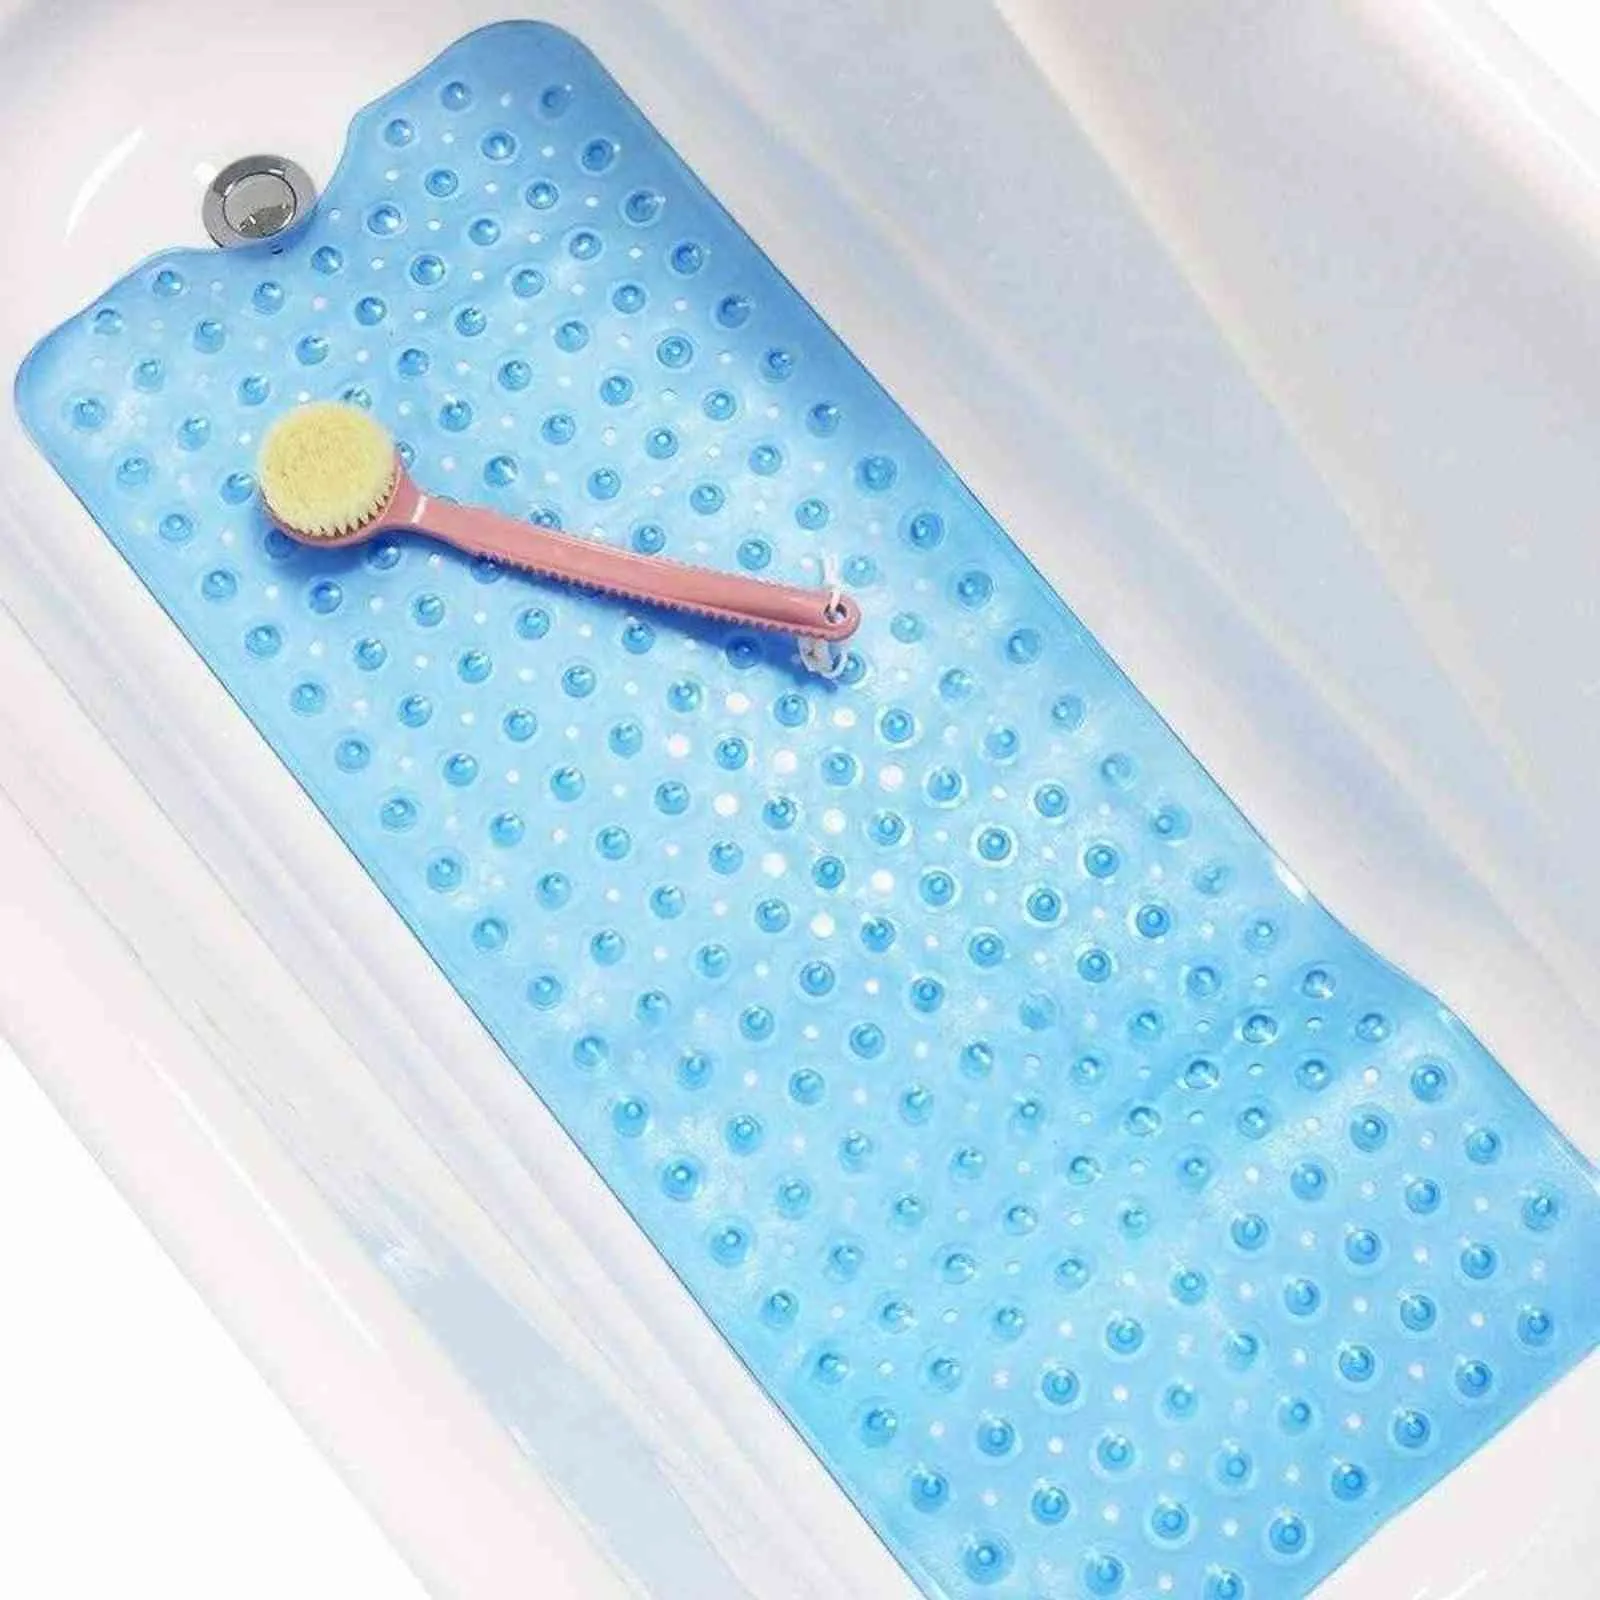 Tapete de banho longa 100 * 40 cm Banheiro chuveiro esteira antiderrapante, máquina ecológica lavável aplicar para crianças, idosos 211109